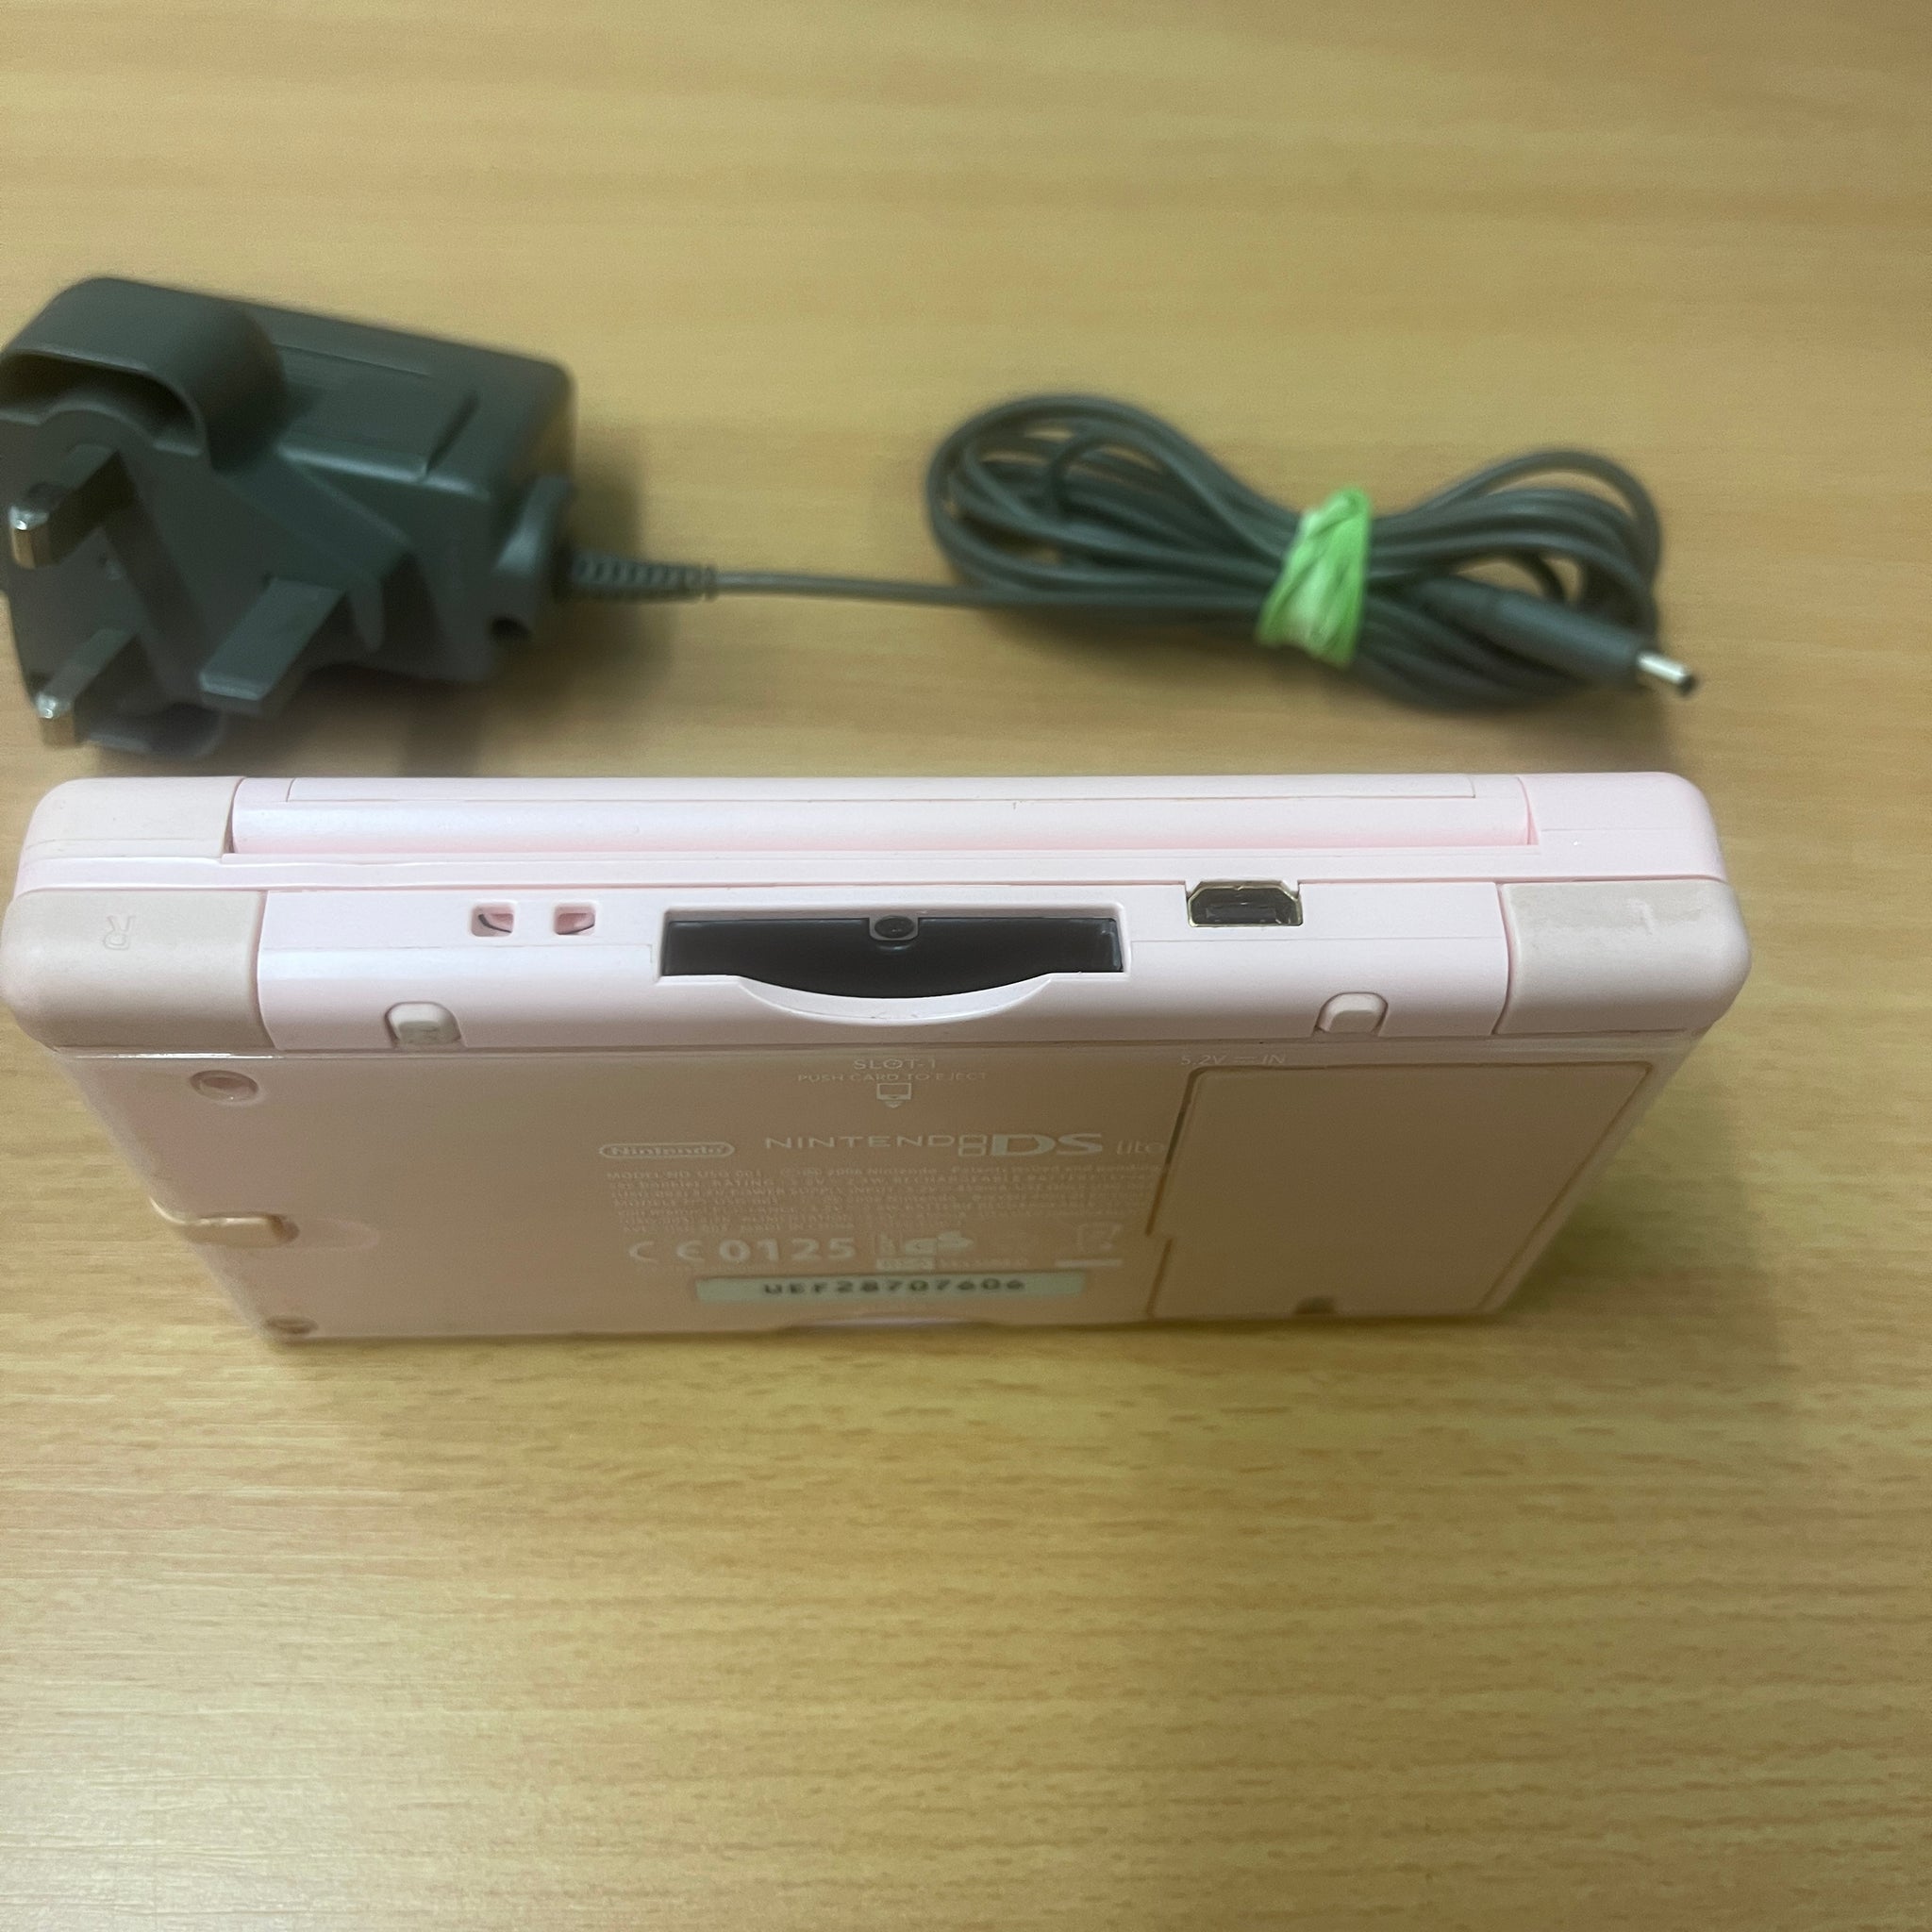 Nintendo ds lite pink handheld